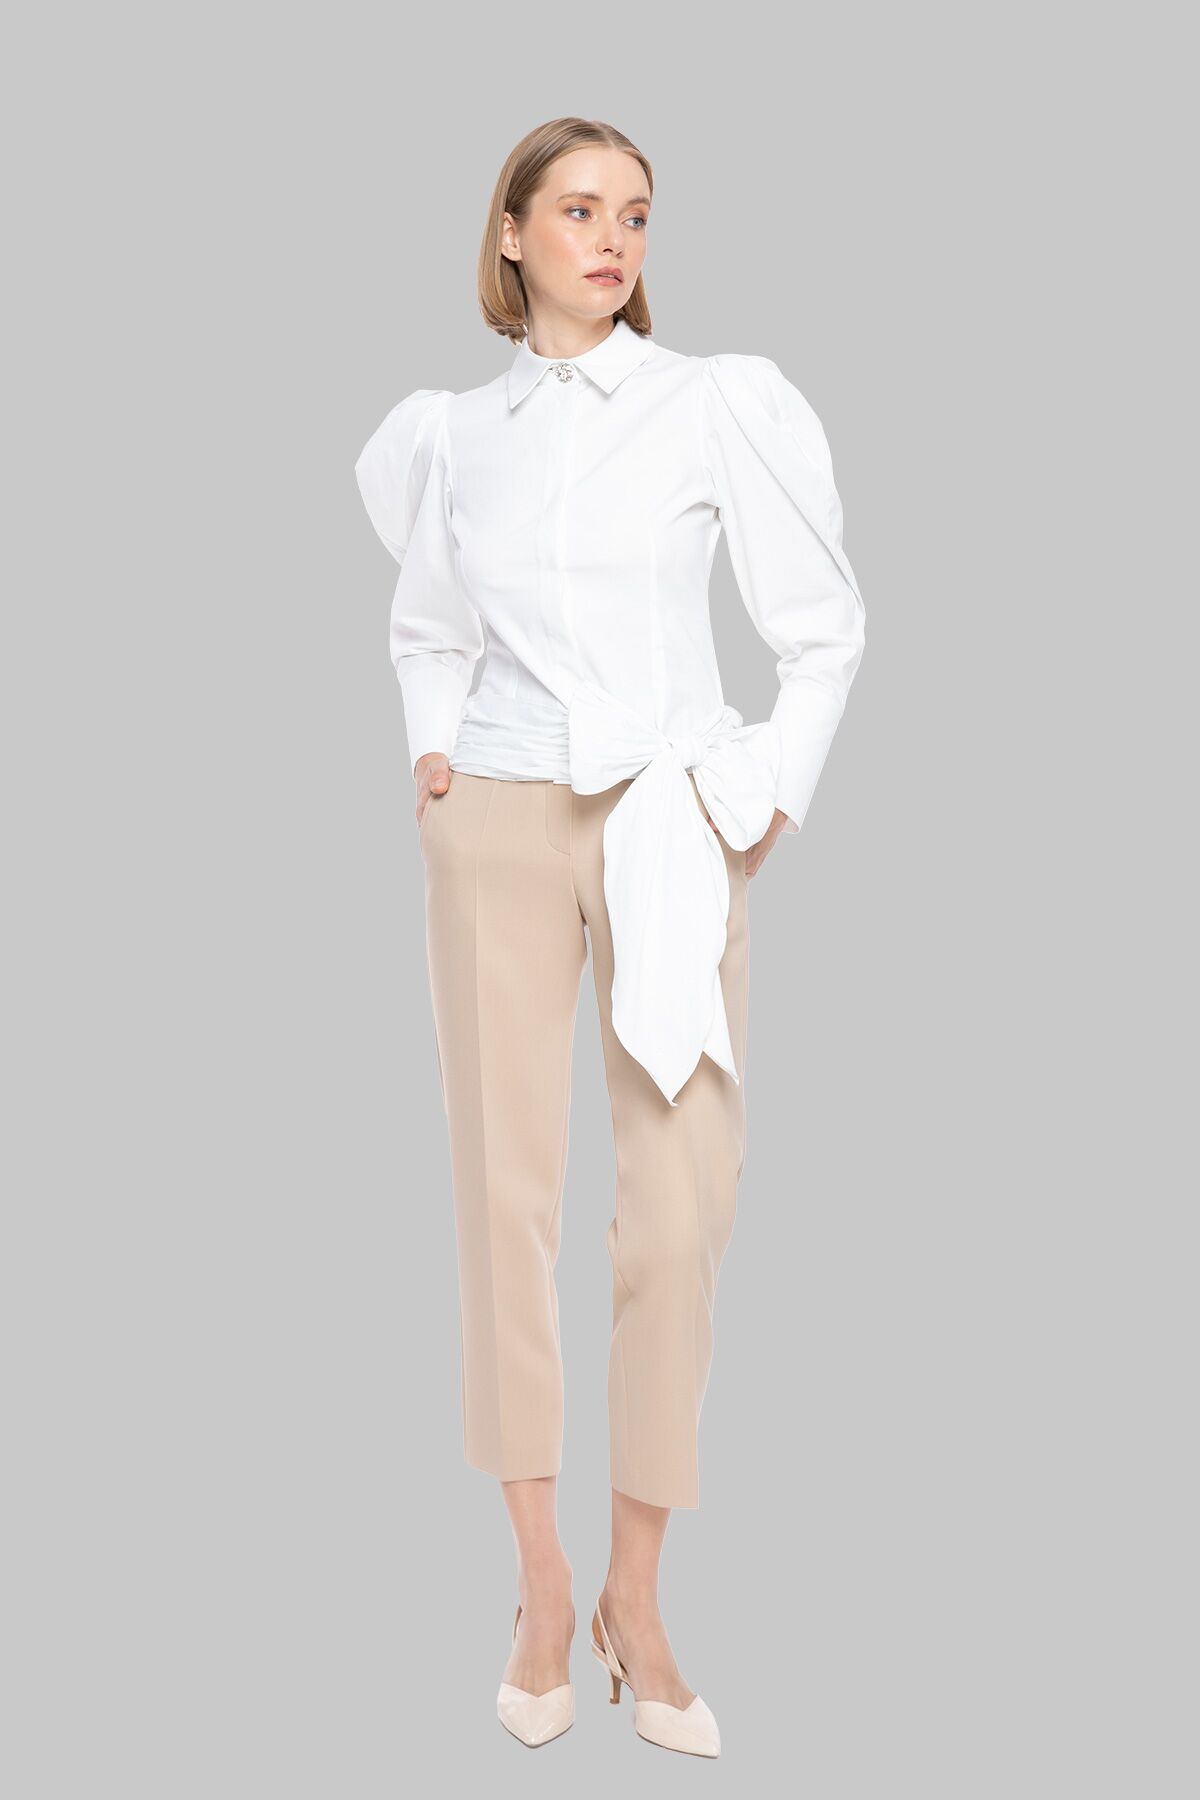  GIZIA - Tie Detailed White Shirt